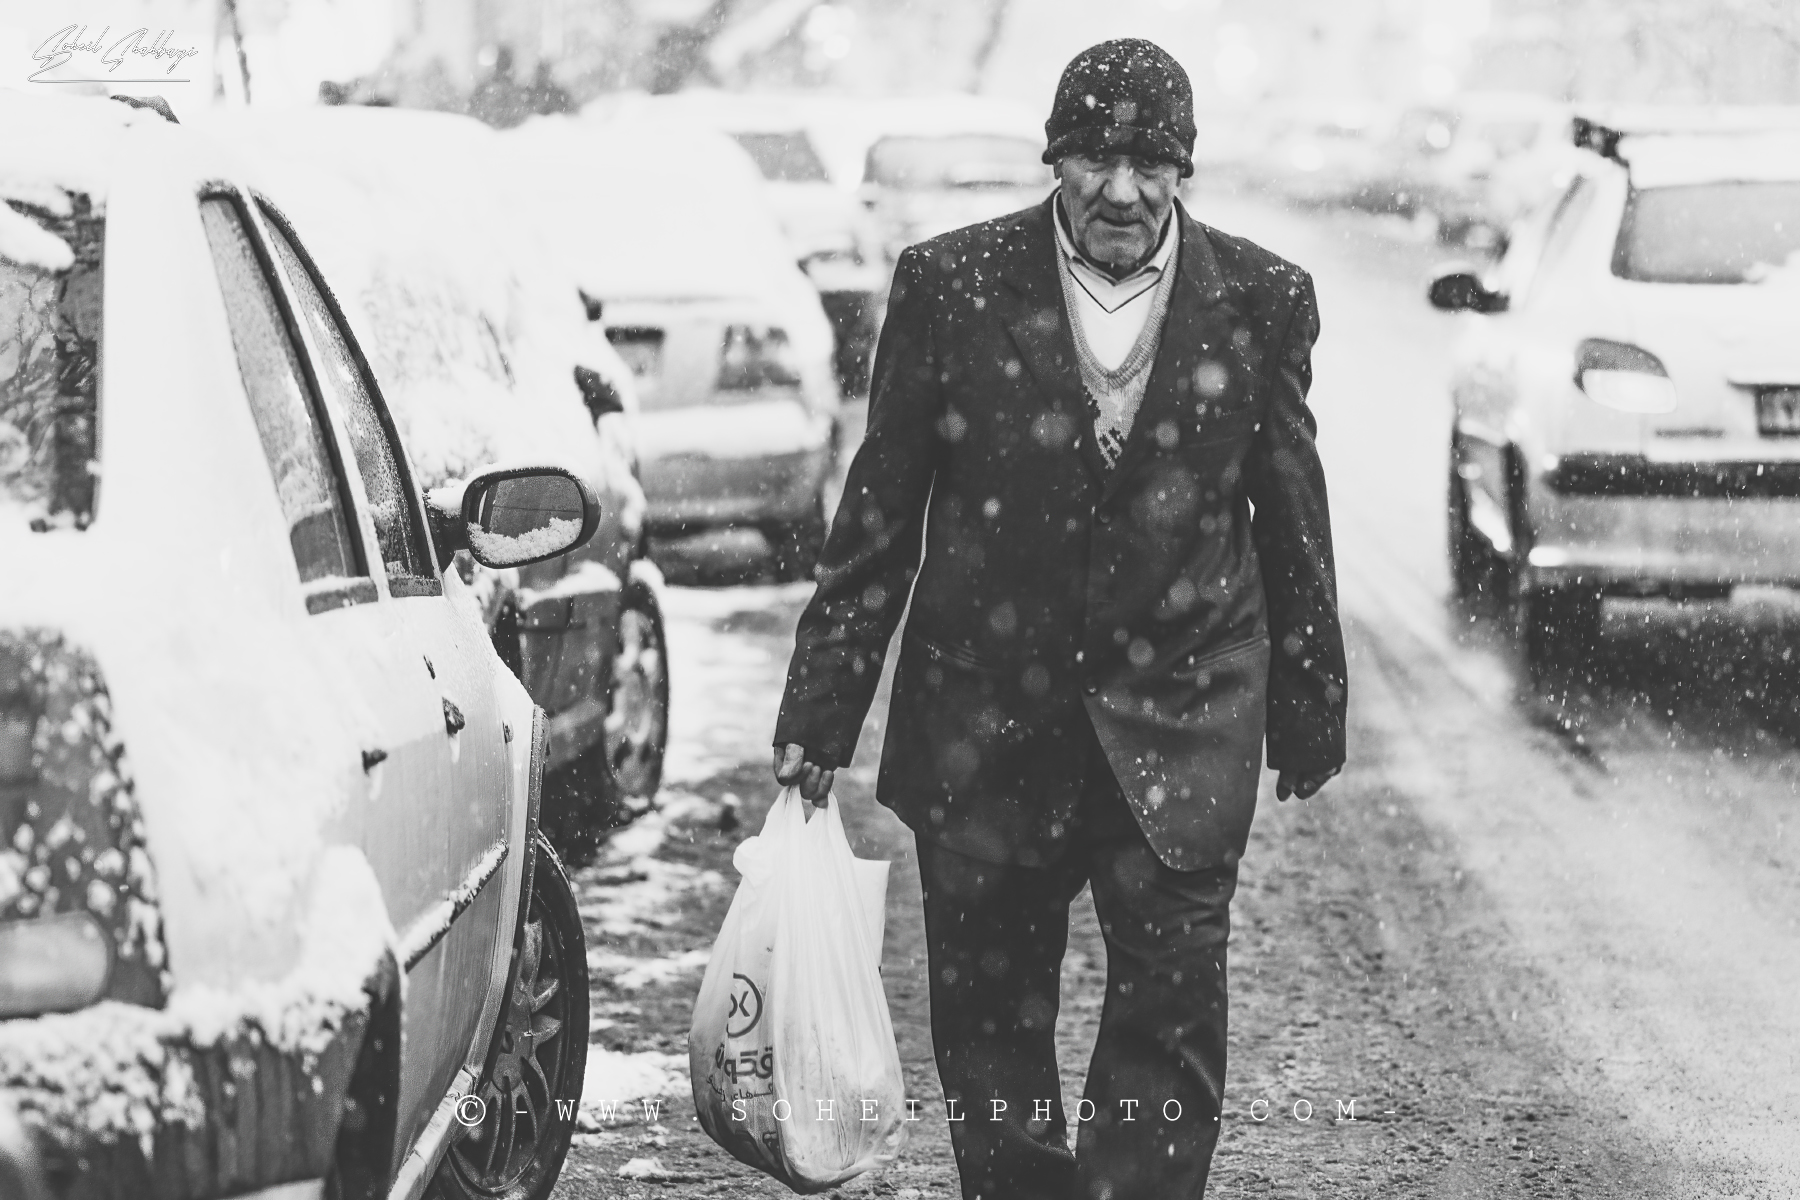 Snowy day in Tehran 3...